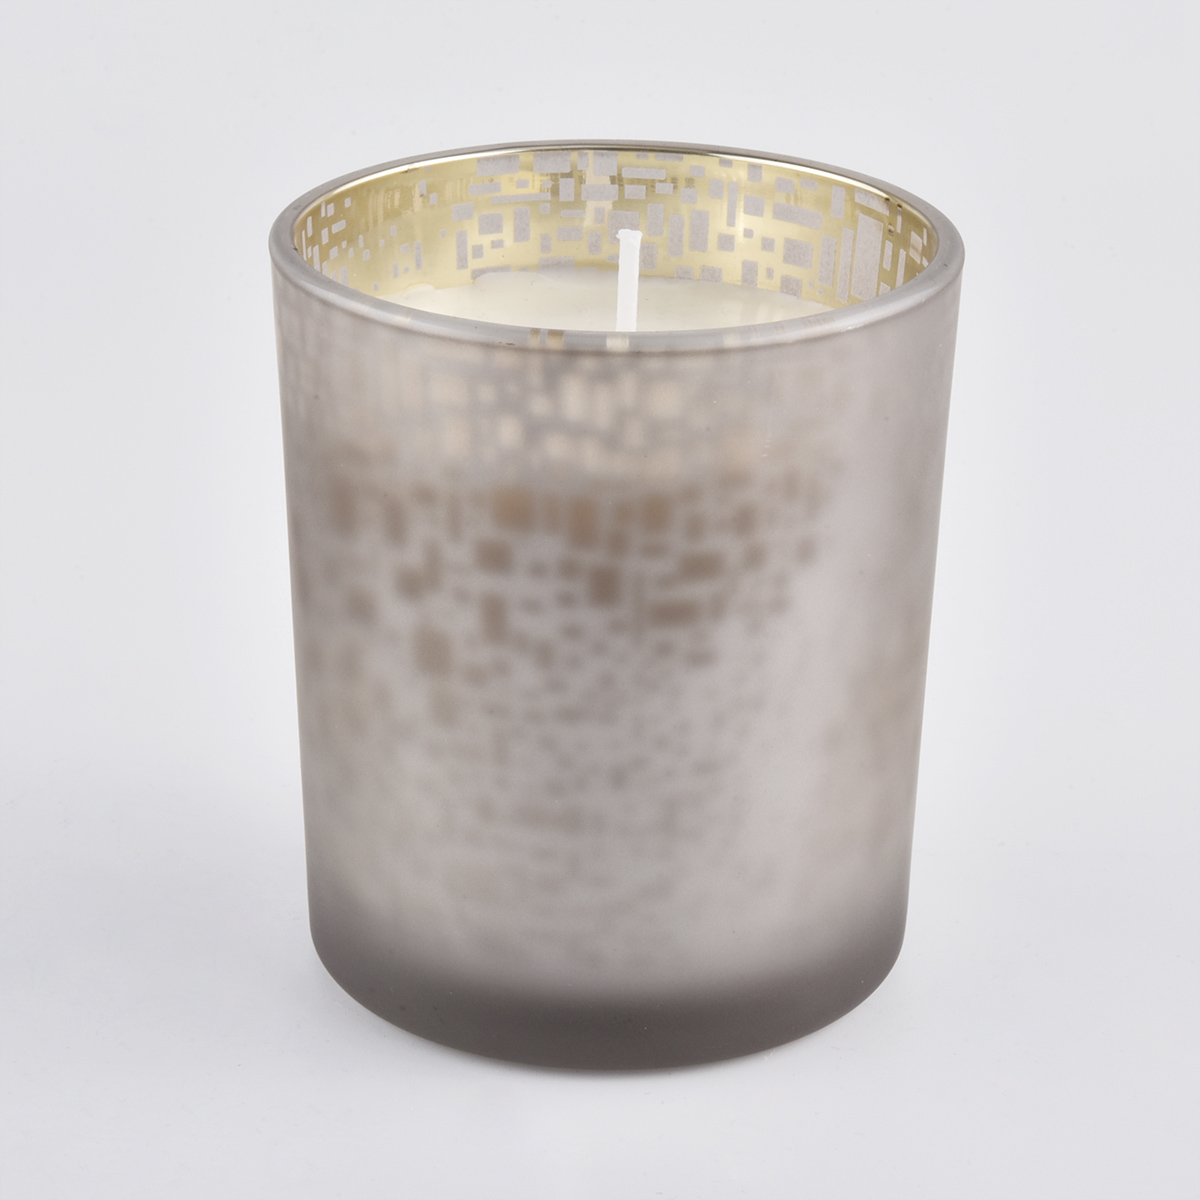 Höyrytetty harmaa lasipurkku, jossa on koristeellinen kuvio kynttilöihin